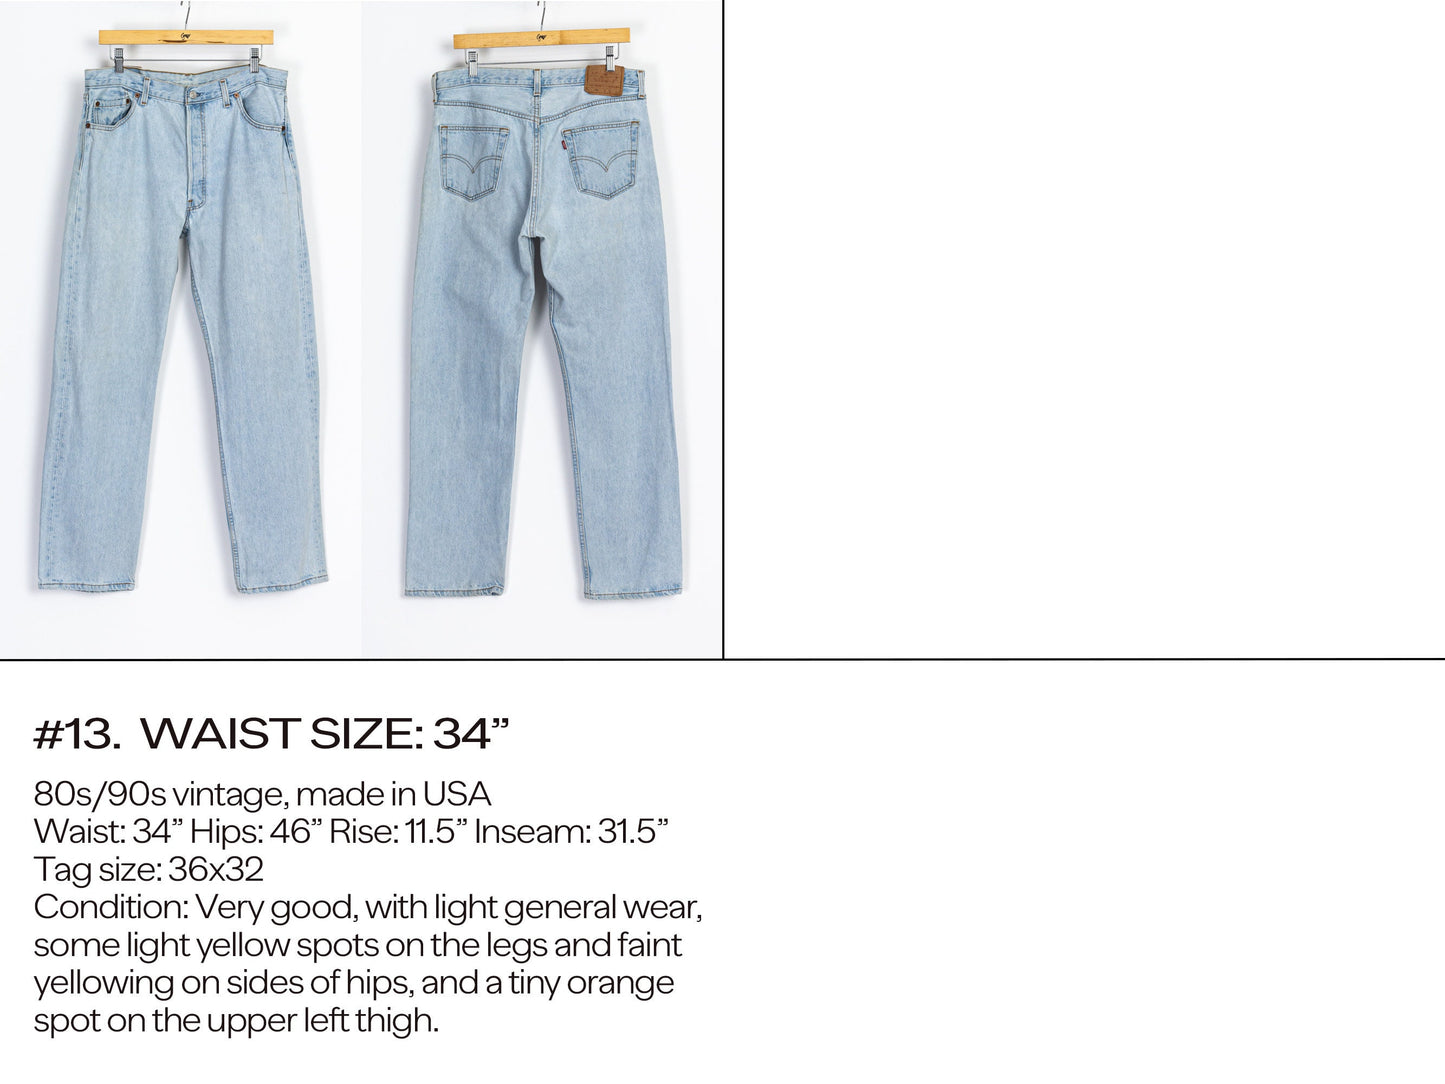 Vintage Levi’s 501 Jeans 